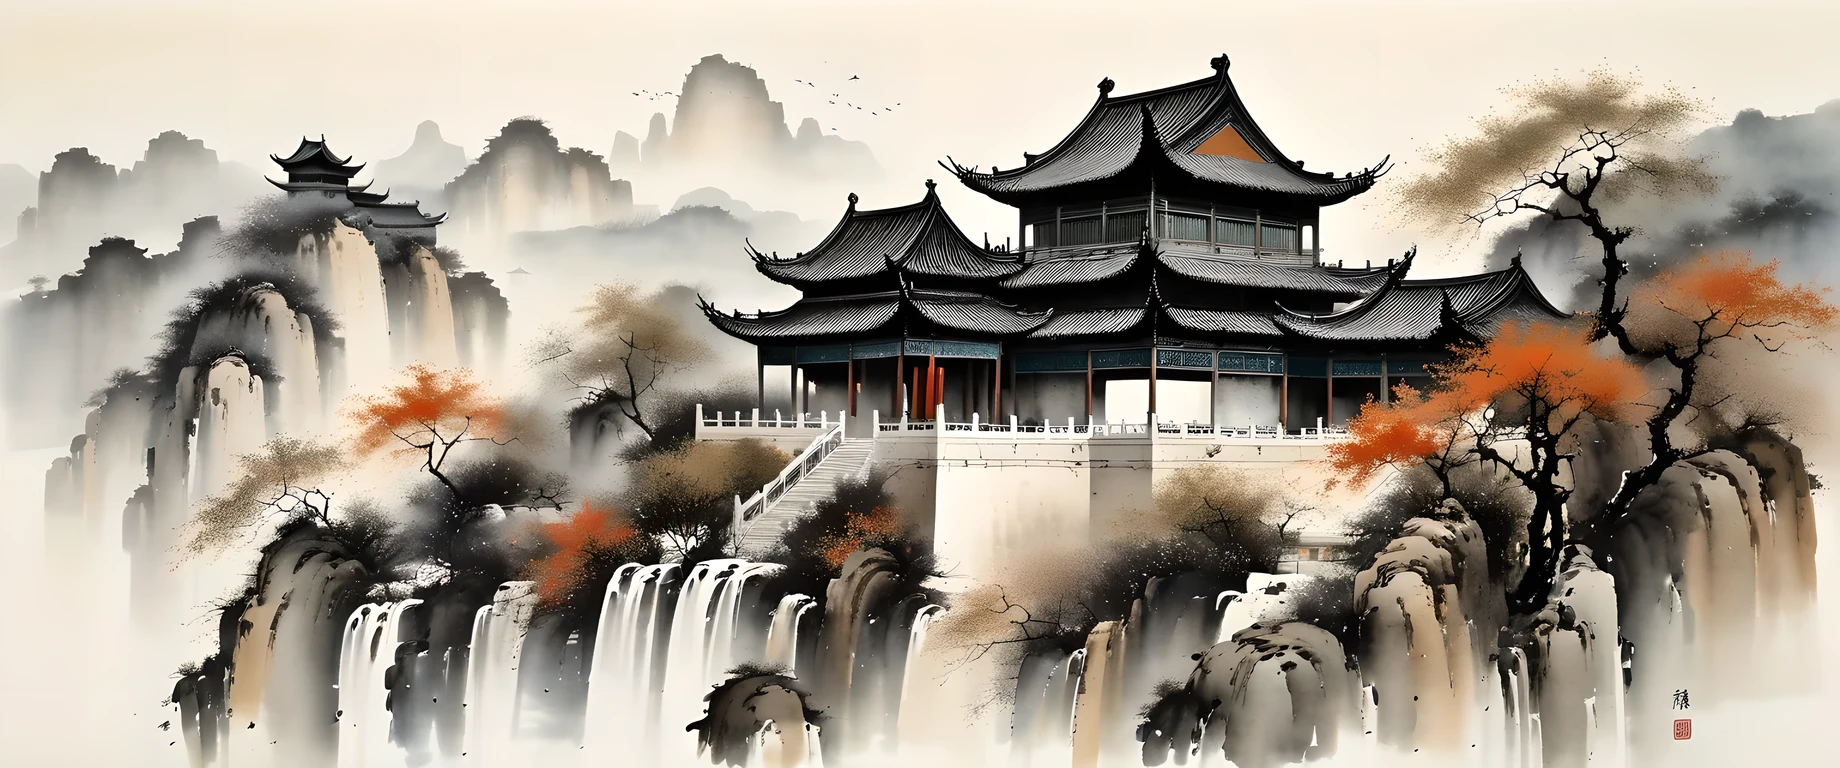 arte de tinta exquisito, Realista, arquitectura china detallada, Estilo Wu Guanzhong, colores descoloridos

